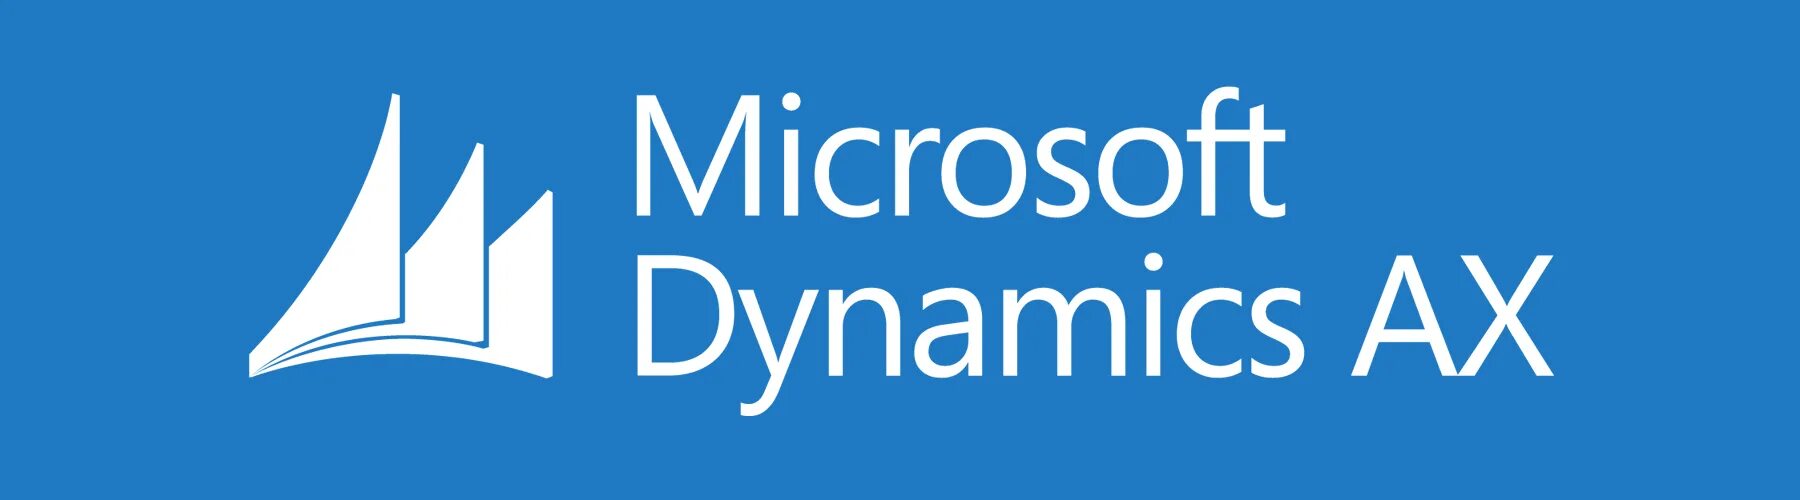 Find dynamic. Microsoft Dynamics AX 365. Microsoft Dynamics AX Интерфейс. Microsoft Dynamics AX логотип. MS Dynamics AX 2012.